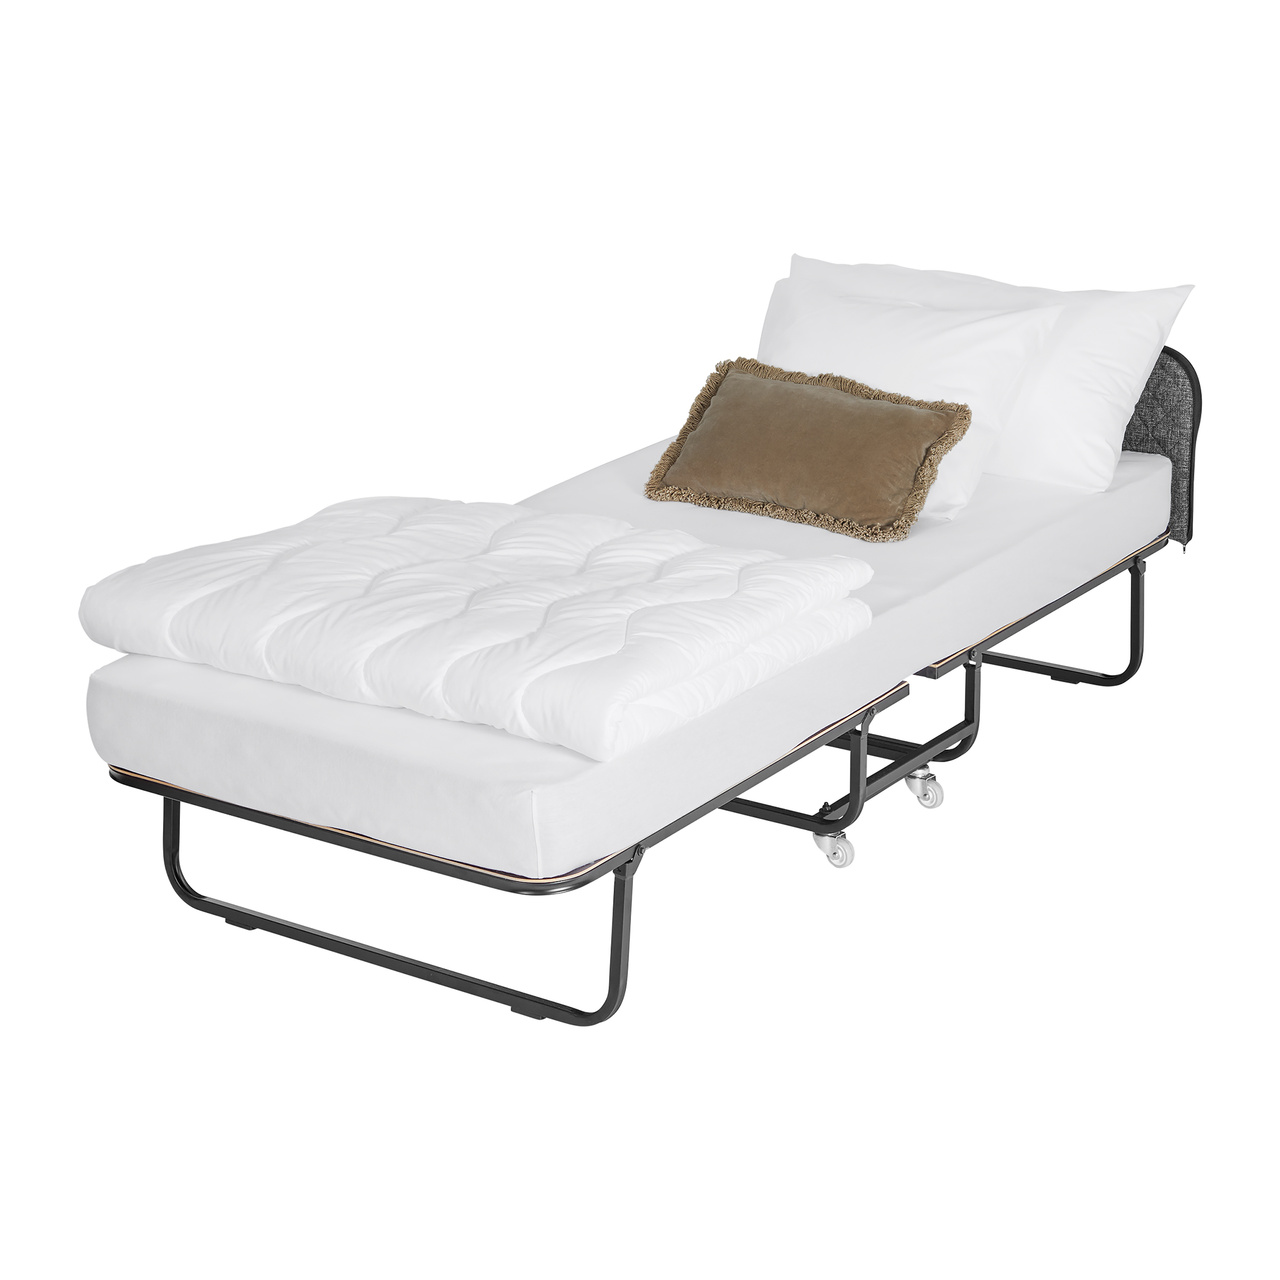 Rollaway folding bed Edward Ritz - Pocket